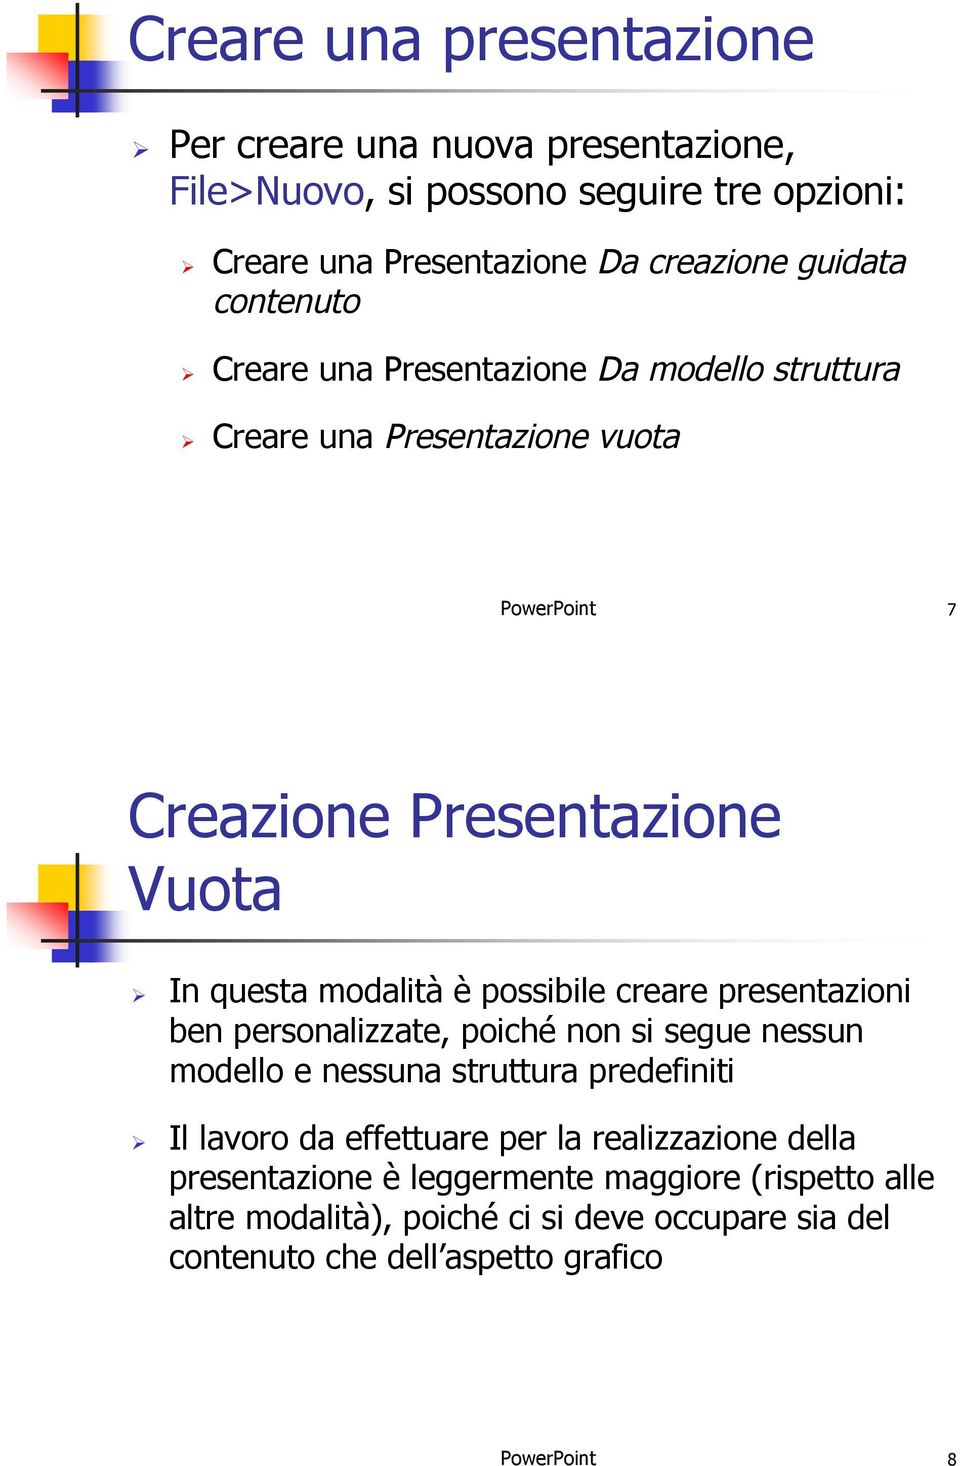 Creare una Presentazione vuota PowerPoint 7 Creazione Presentazione Vuota!